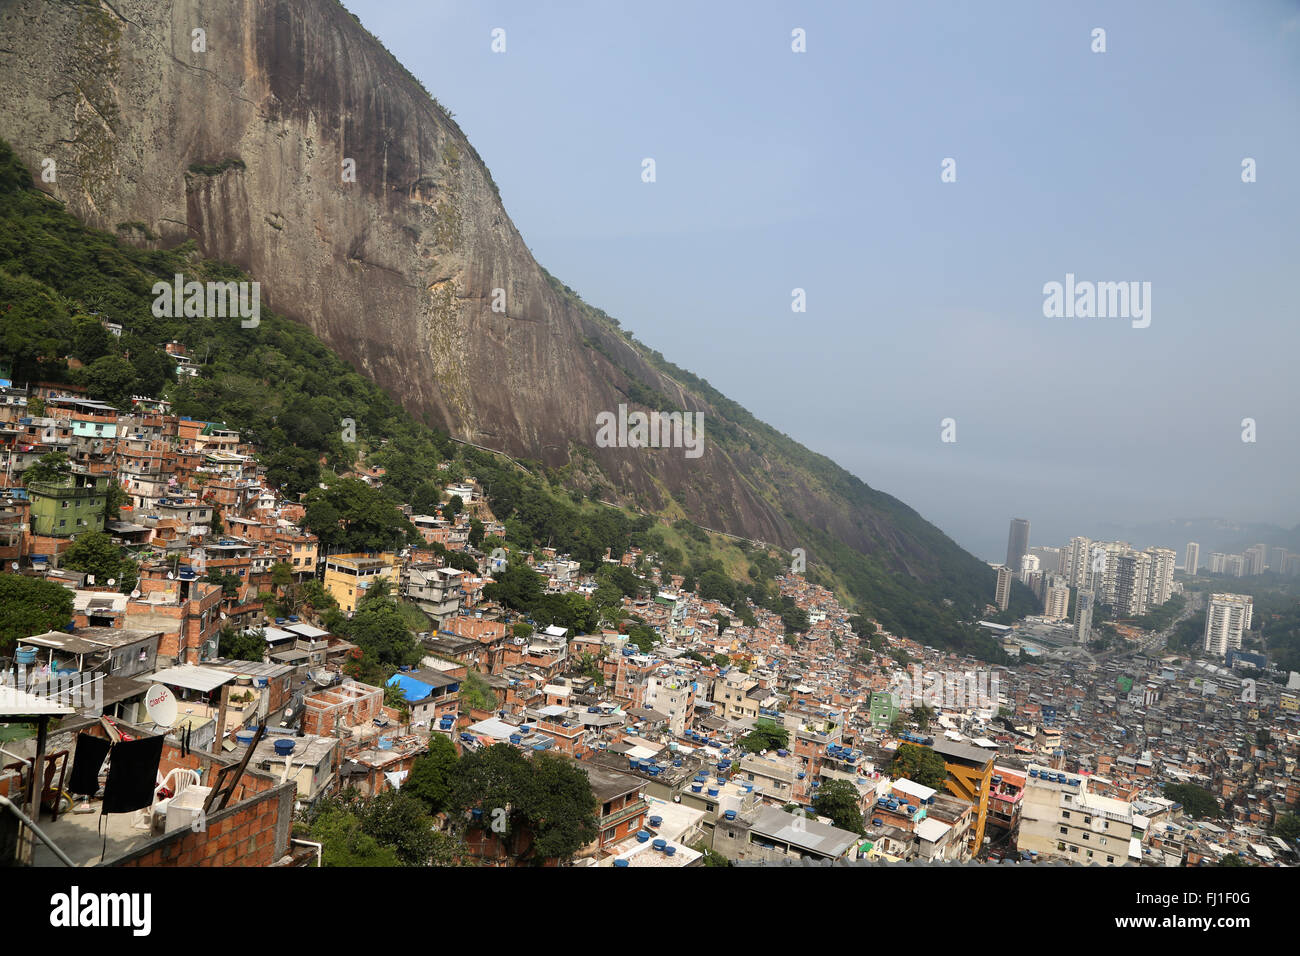 Favela de Rocinha, Rio de Janeiro, Brazil Stock Photo